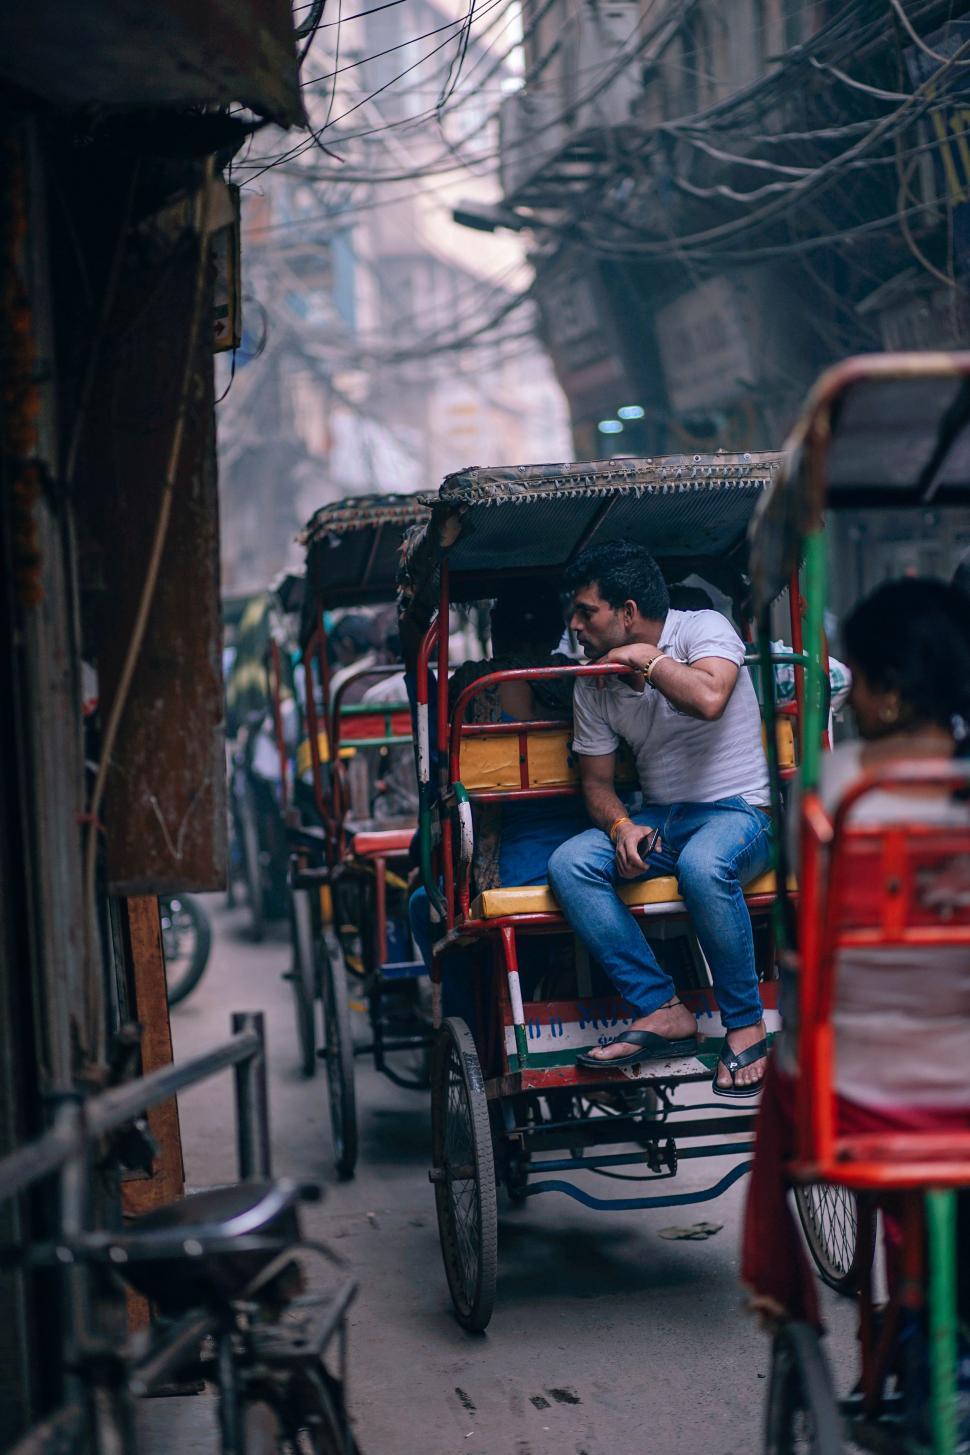 Free Image of Bicycle rickshaws in India 